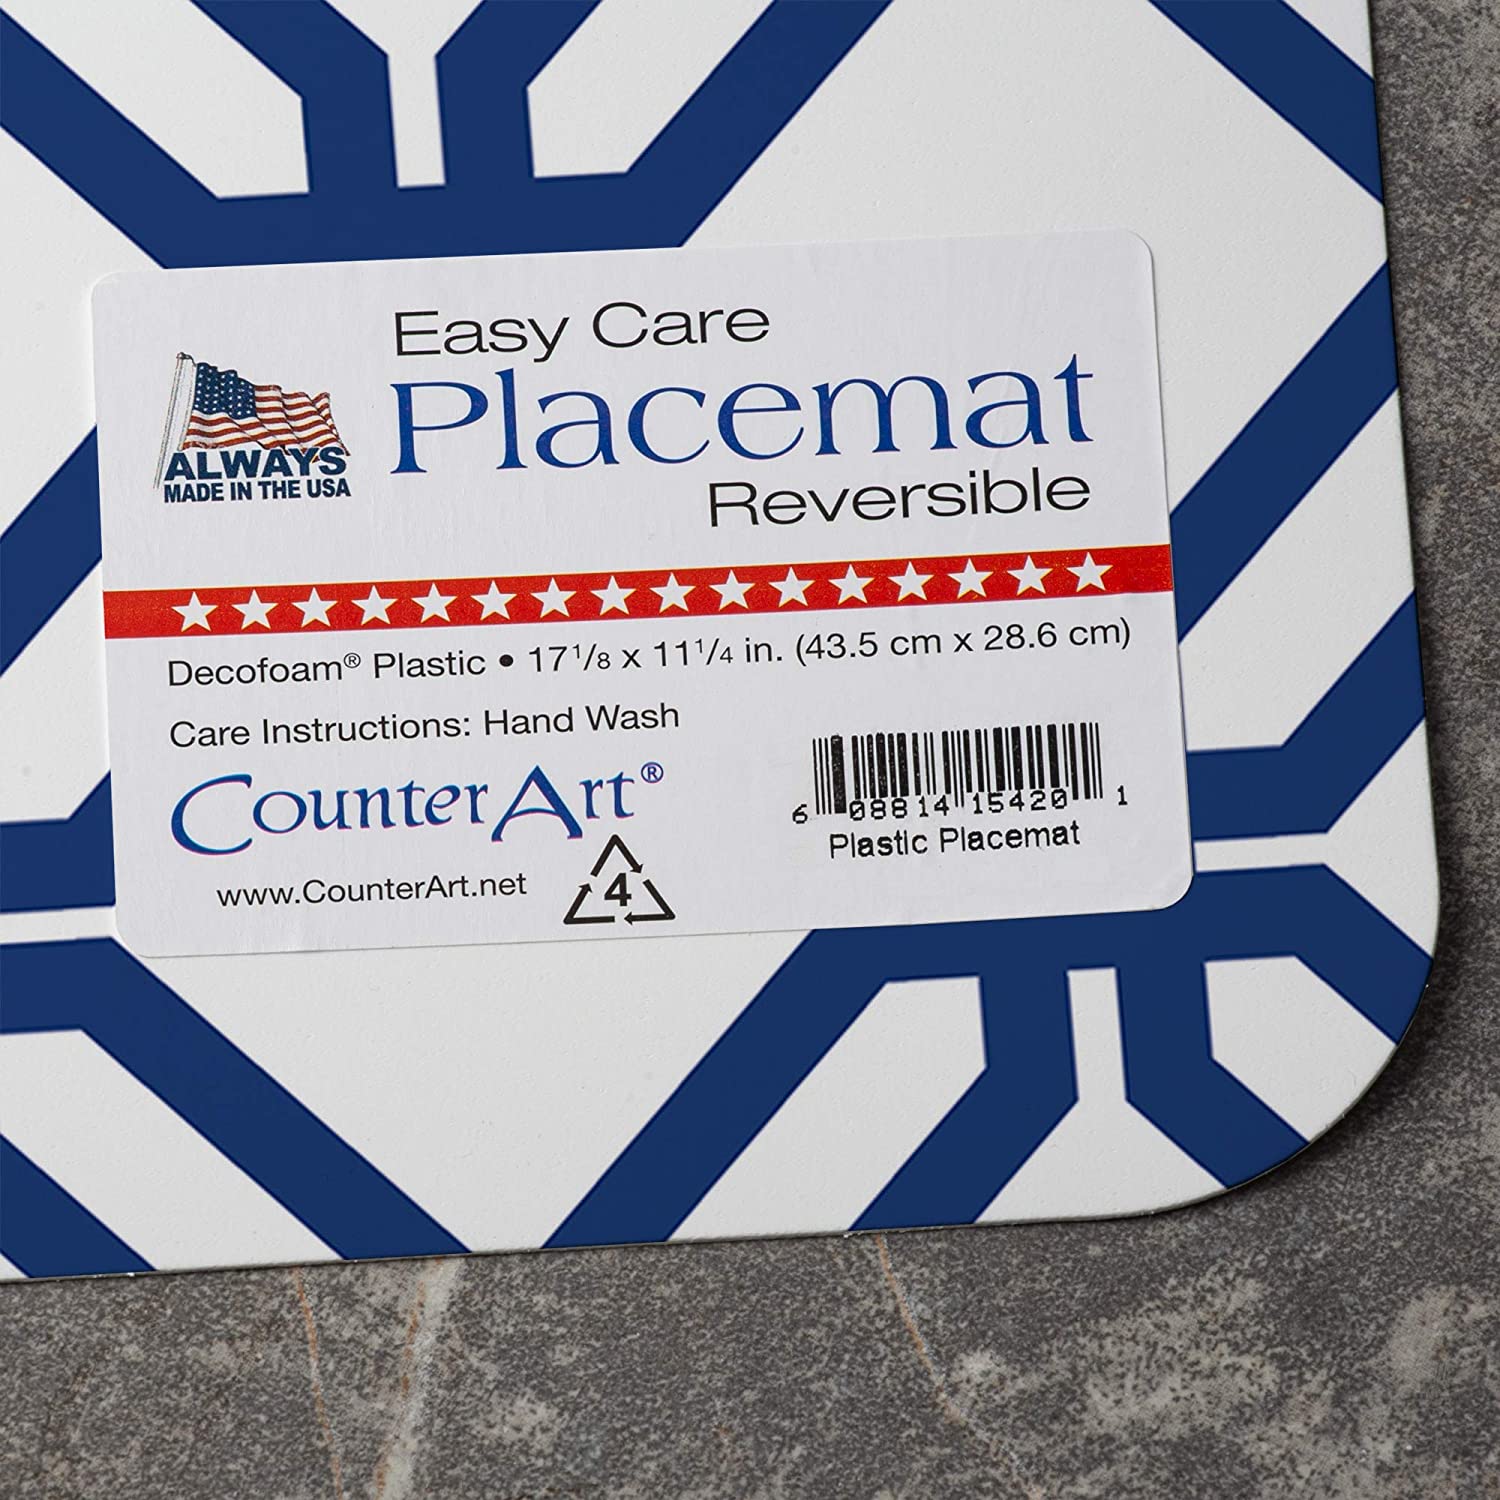 Counter Art Reversible Plastic Placemats, Set of 4, Blue Lattice